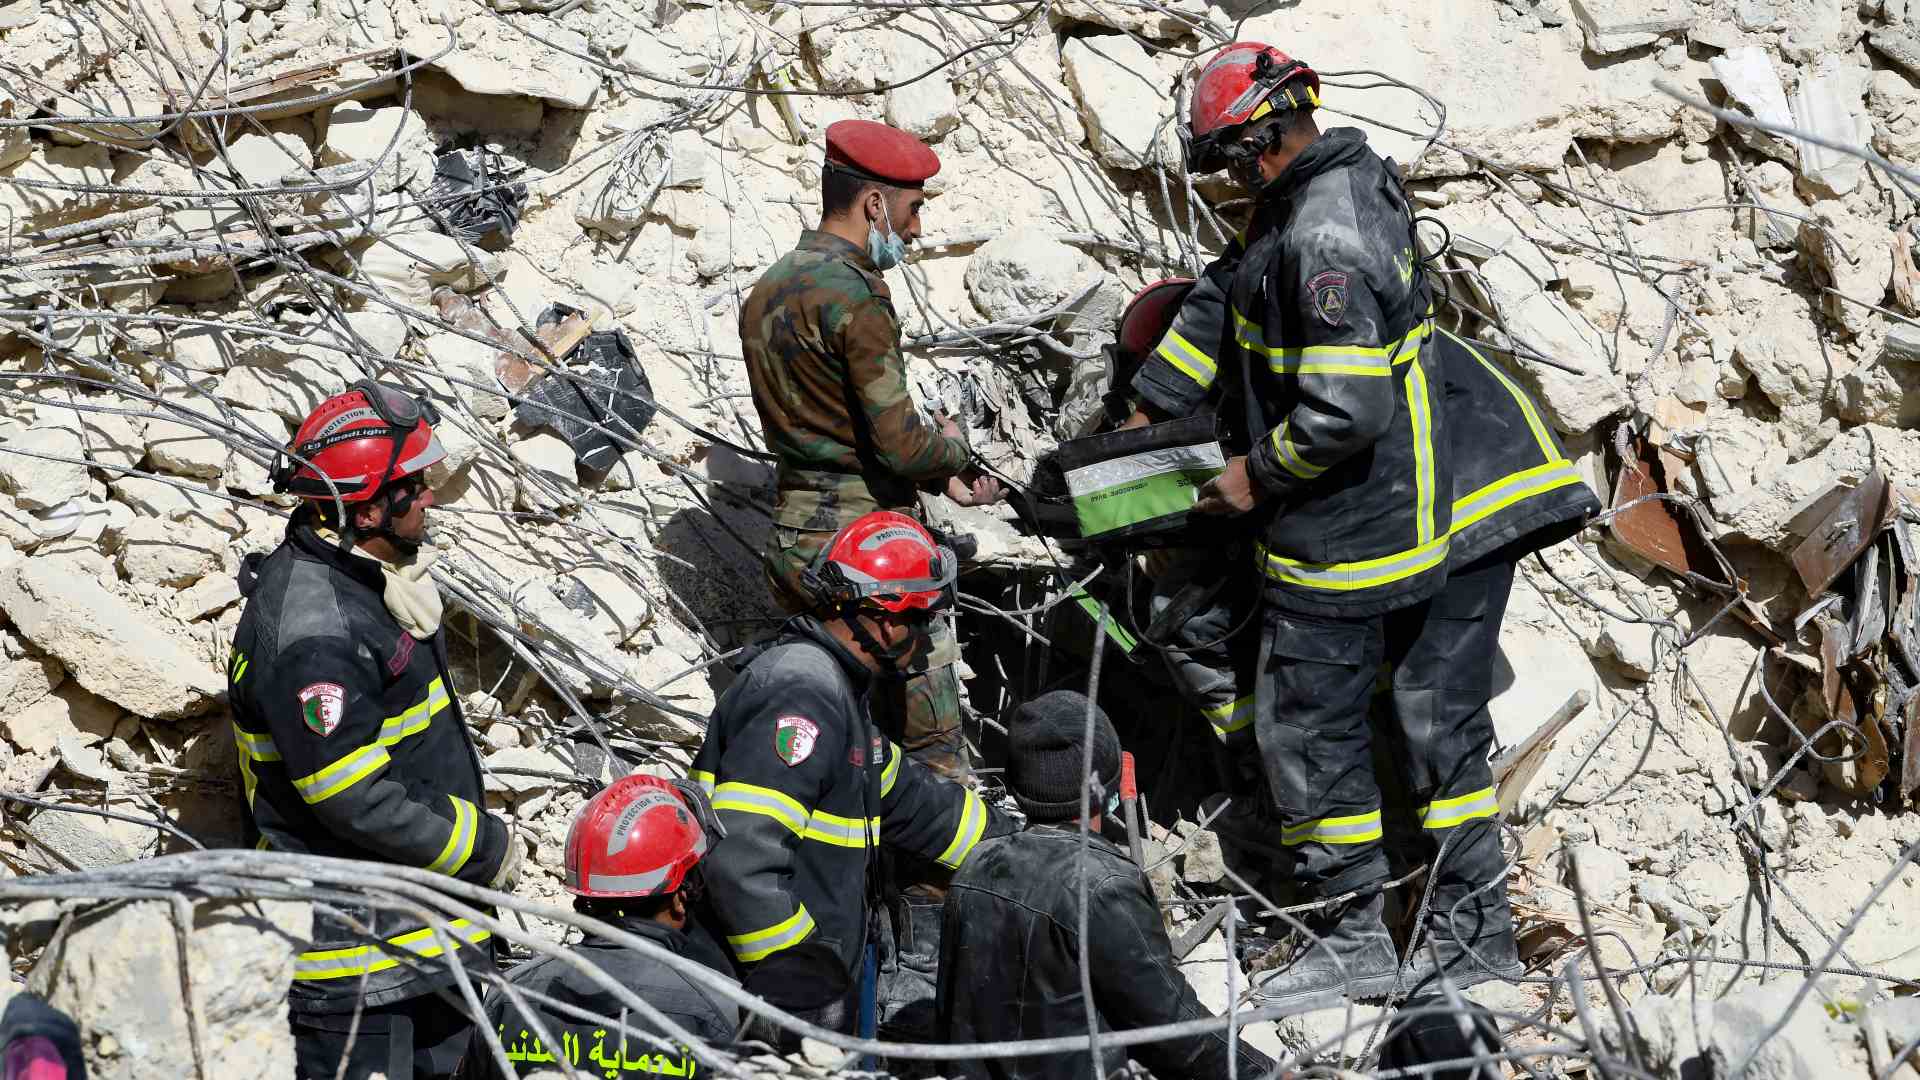 Algerian search and rescue team in Aleppo, Syria